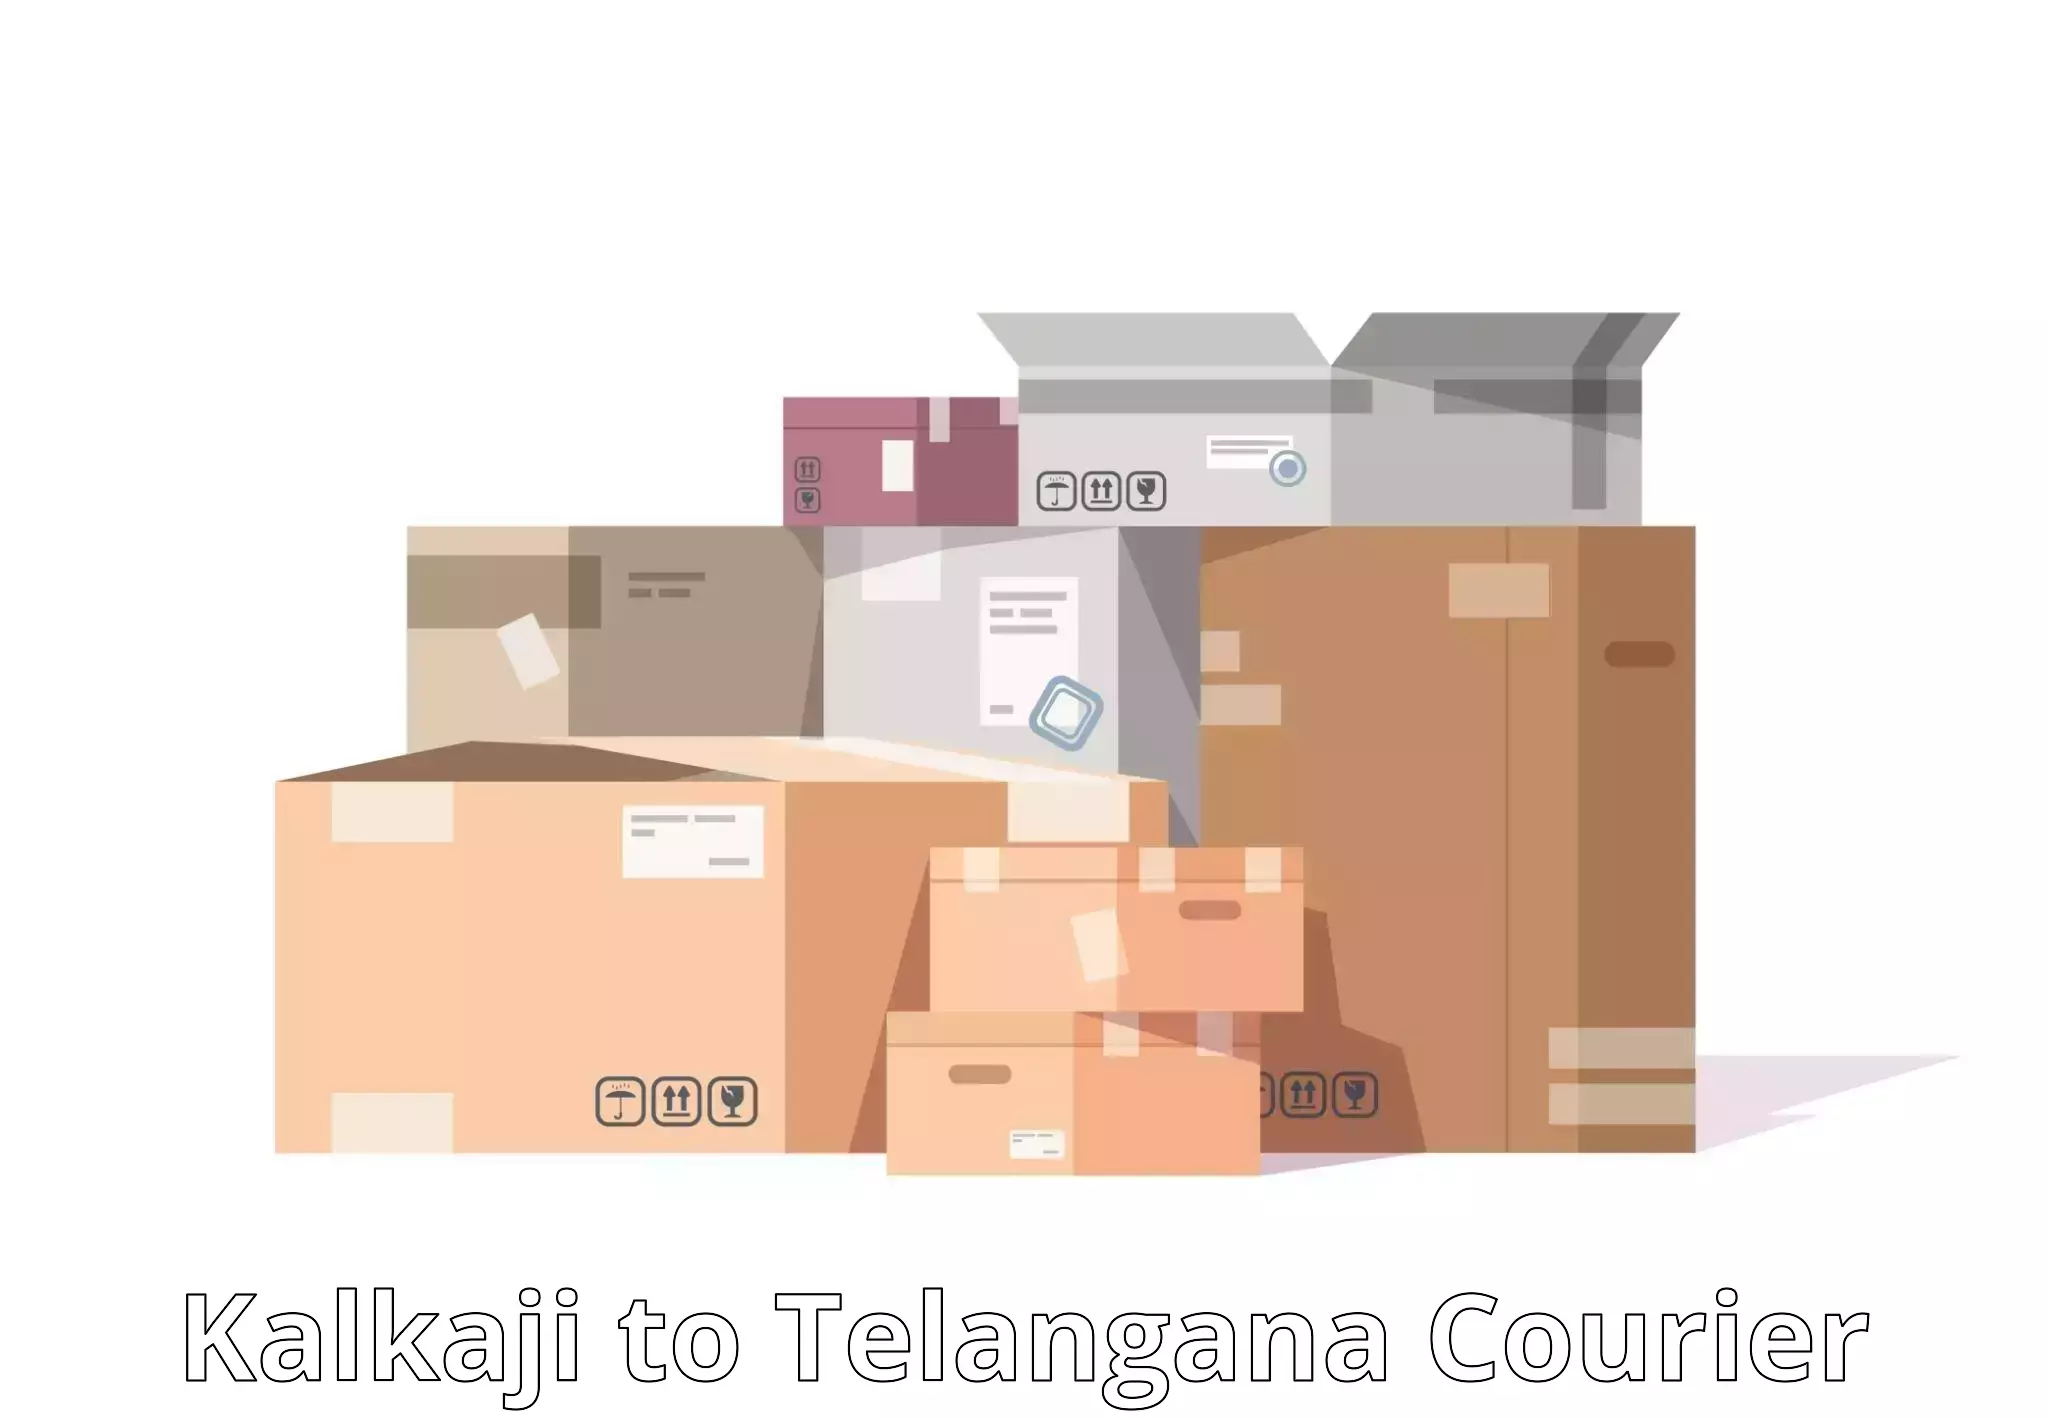 Customer-focused courier Kalkaji to Ramannapeta